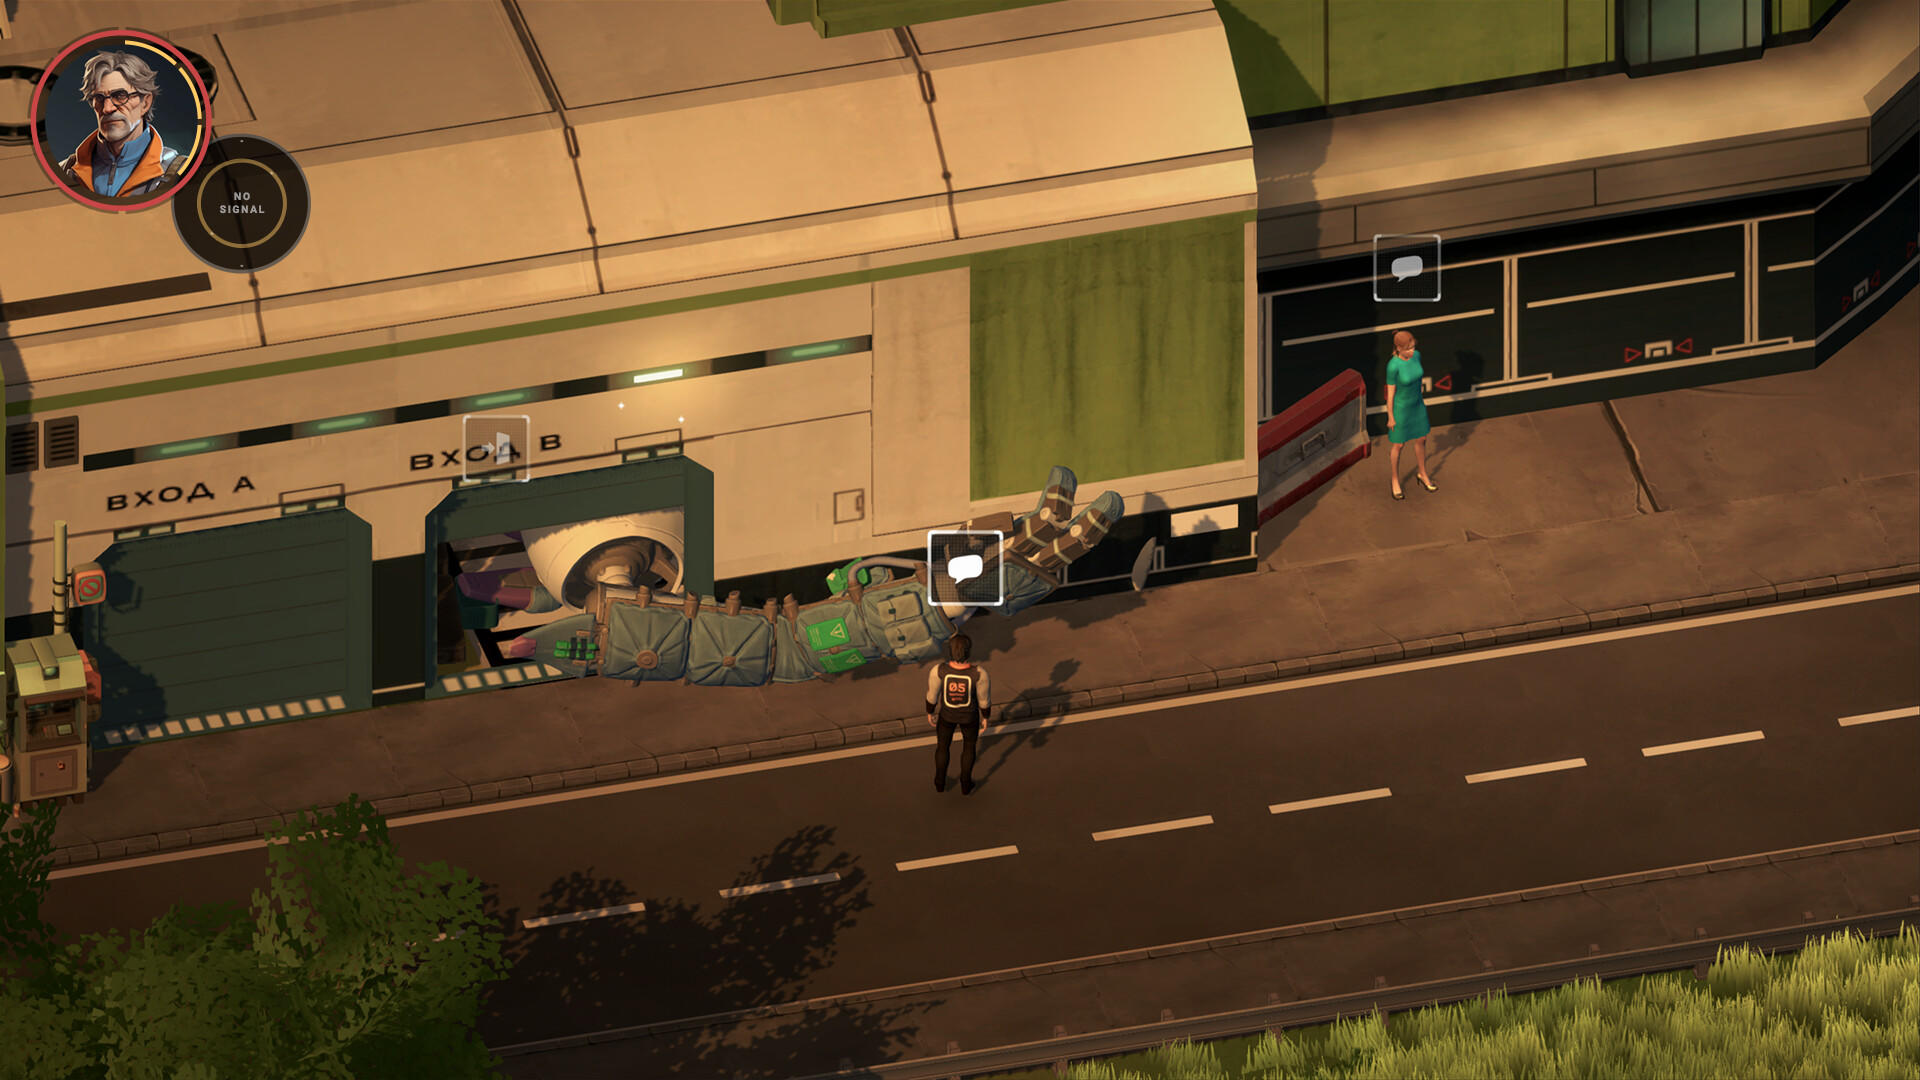 Saturn screenshot game